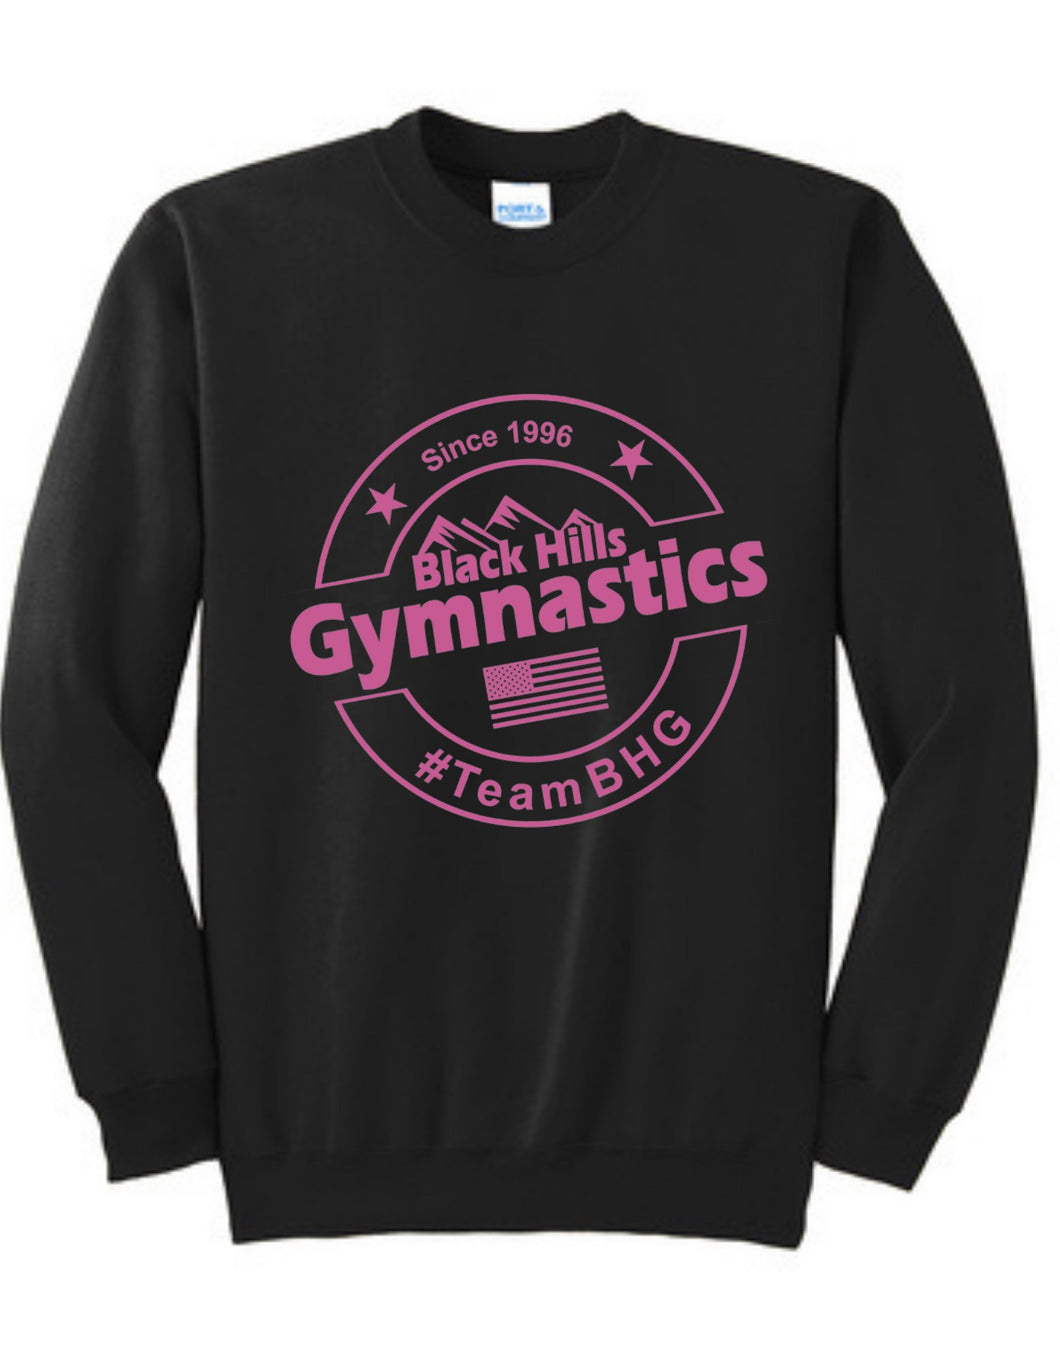 #TeamBHG Classic Collection Adult Sweatshirt